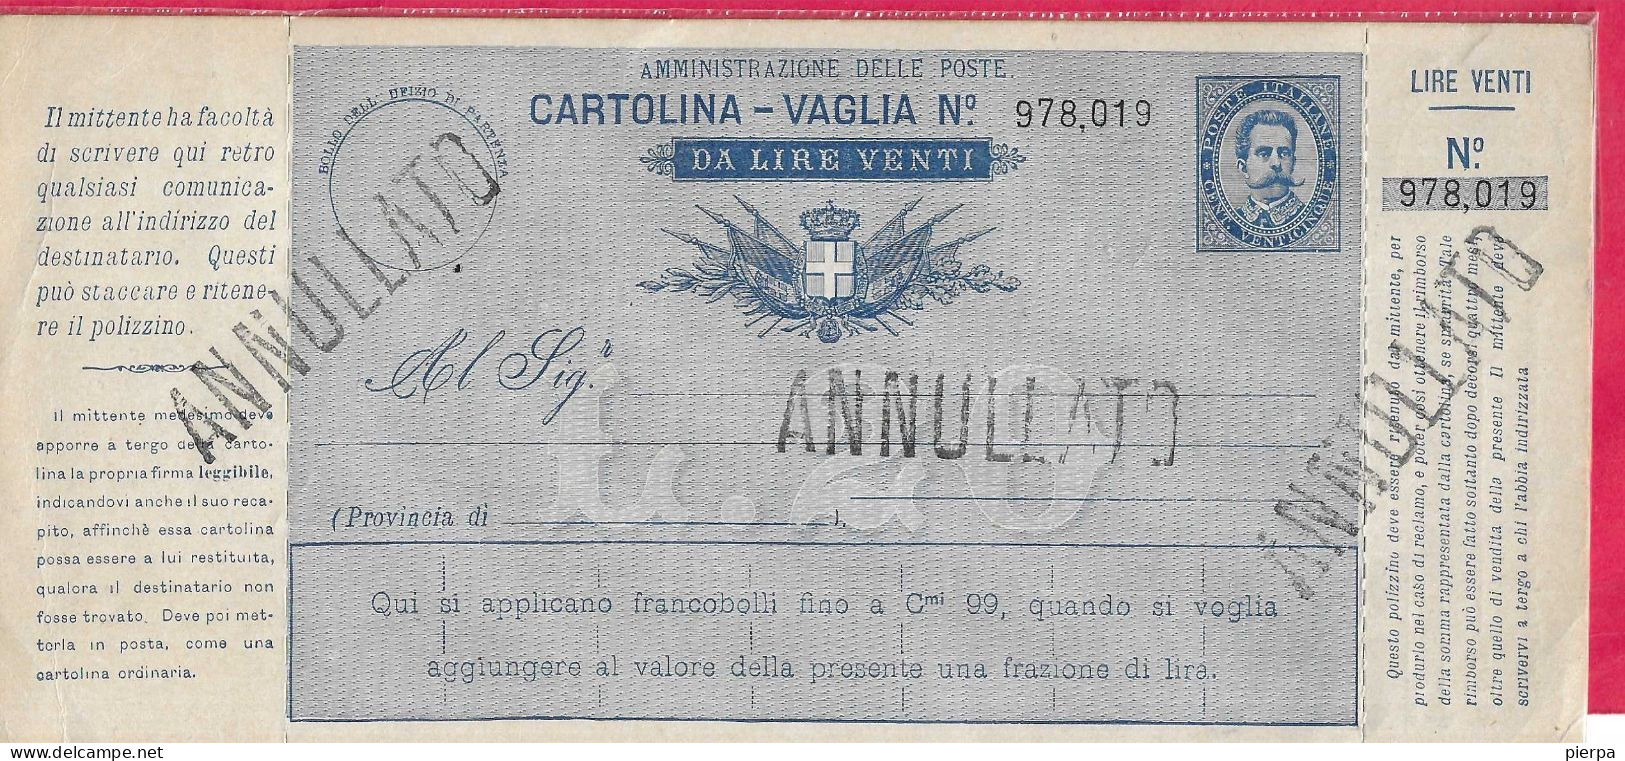 INTERO CARTOLINA-VAGLIA UMBERTO C.25 DA LIRE 20 (CAT. INT. 9A)  NUOVA - TIMBRO ANNULLATO - Entero Postal